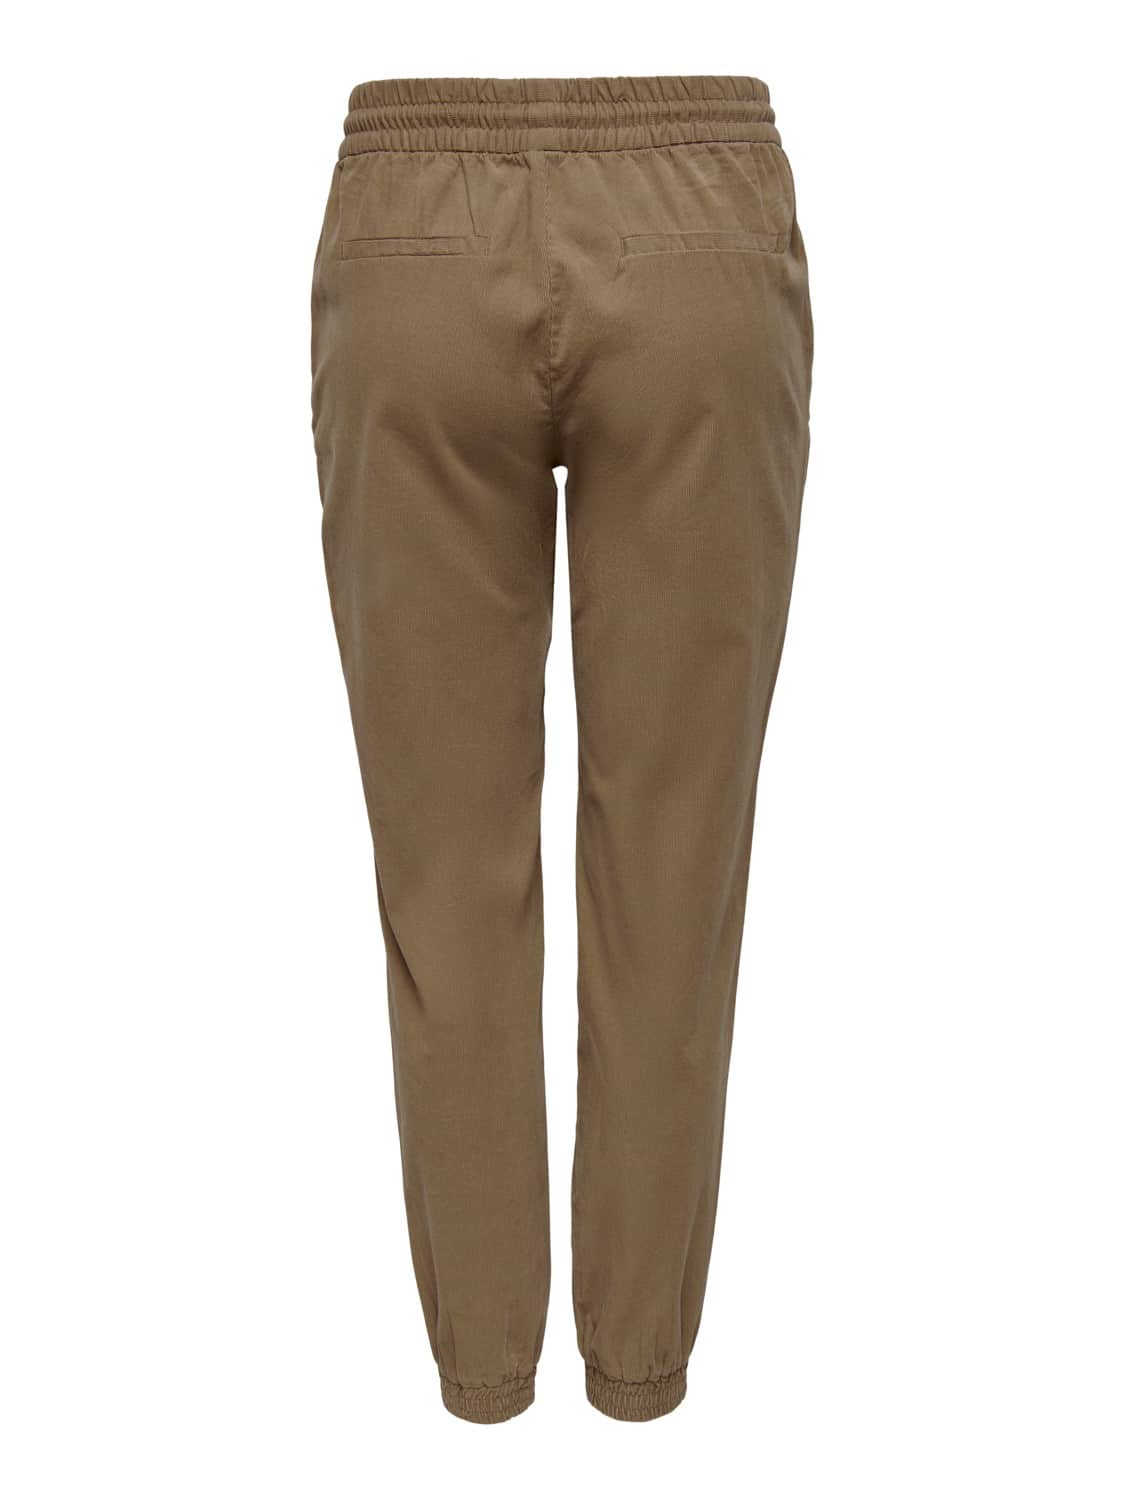 Only Kelda Margate Pants - Hyper Shops